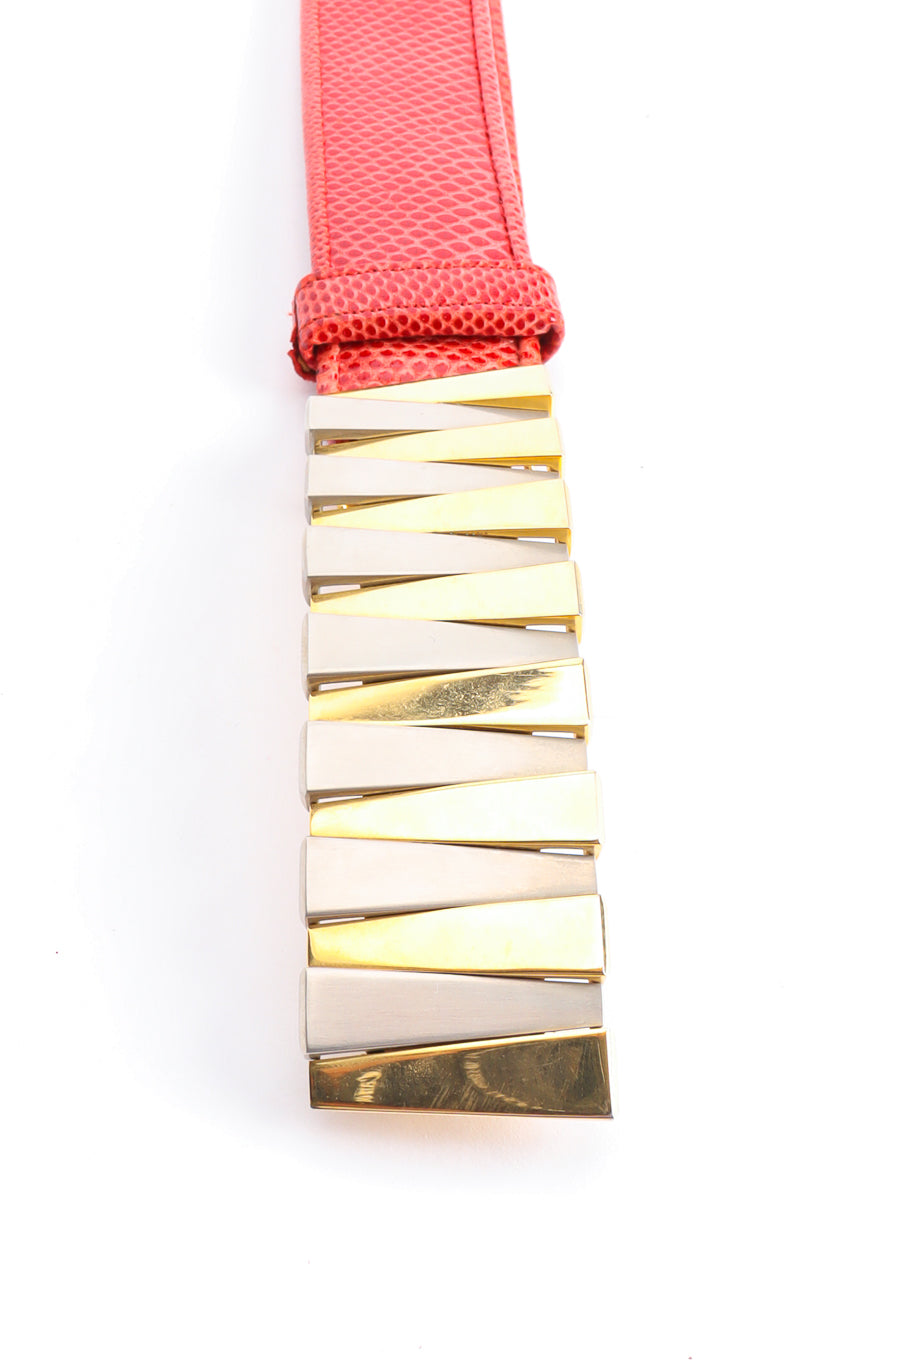 zig zag buckle slide belt by Judith Leiber buckle @recessla